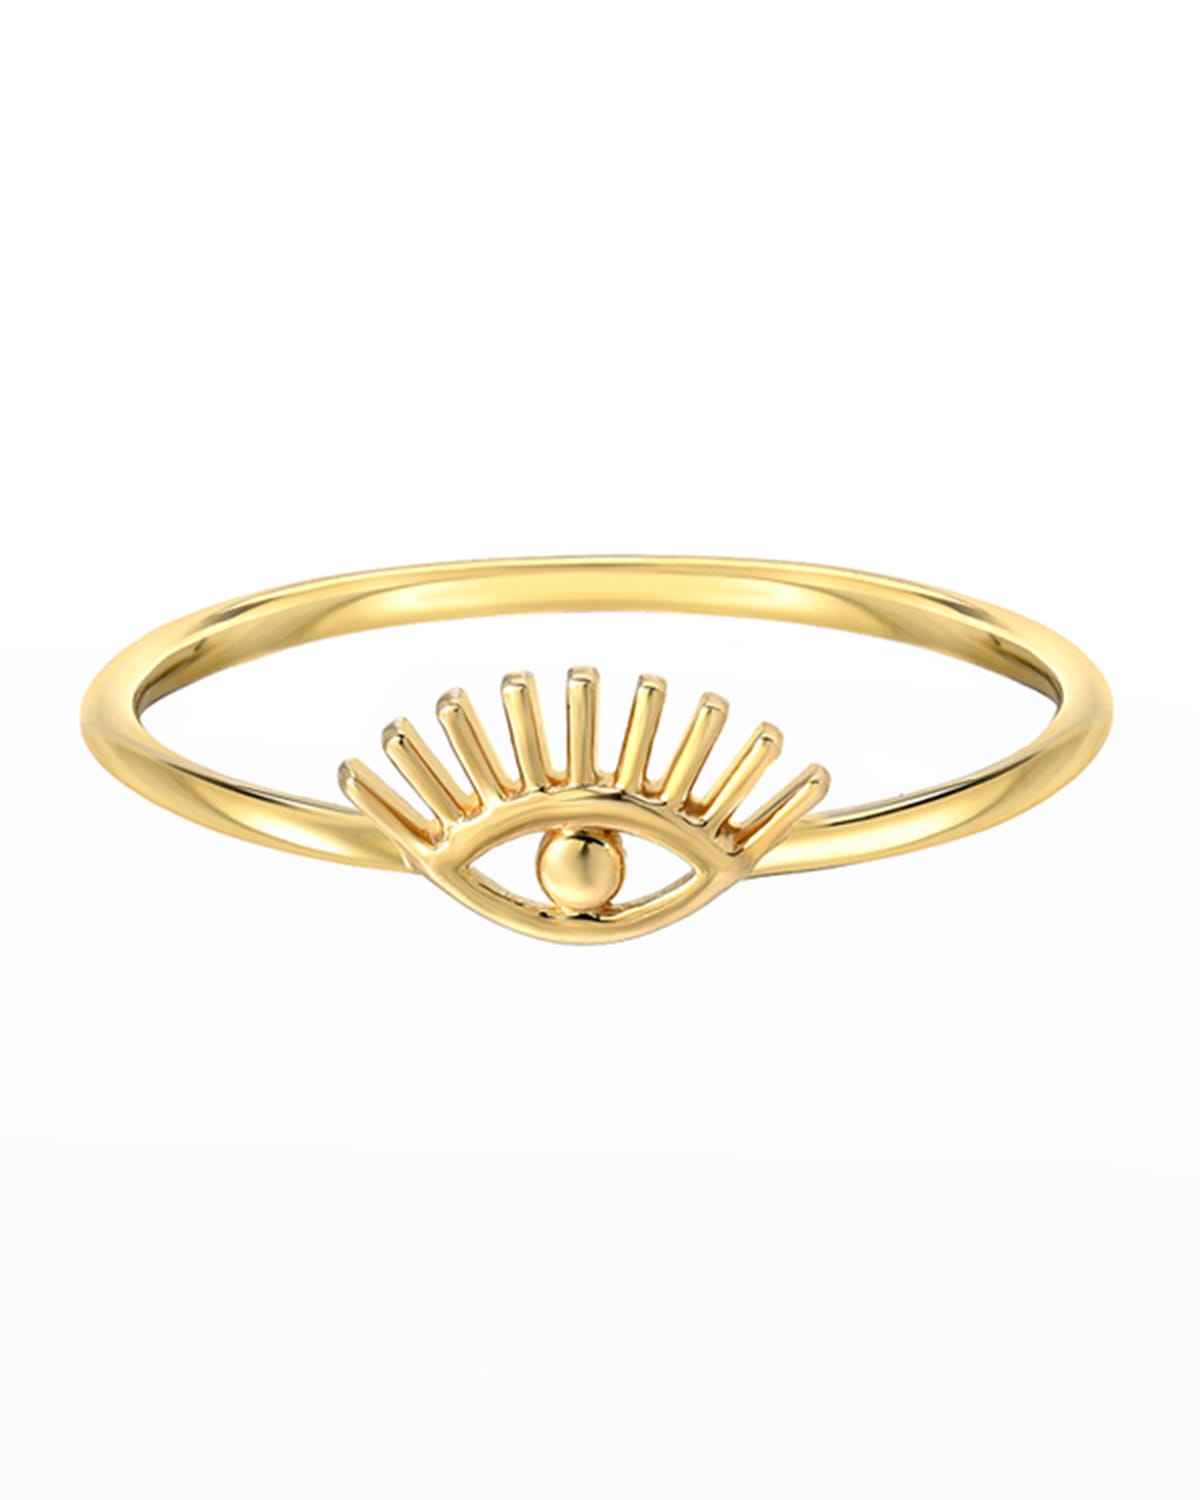 Zoe Lev Jewelry 14k Gold Evil Eye W/ Eyelashes Ring